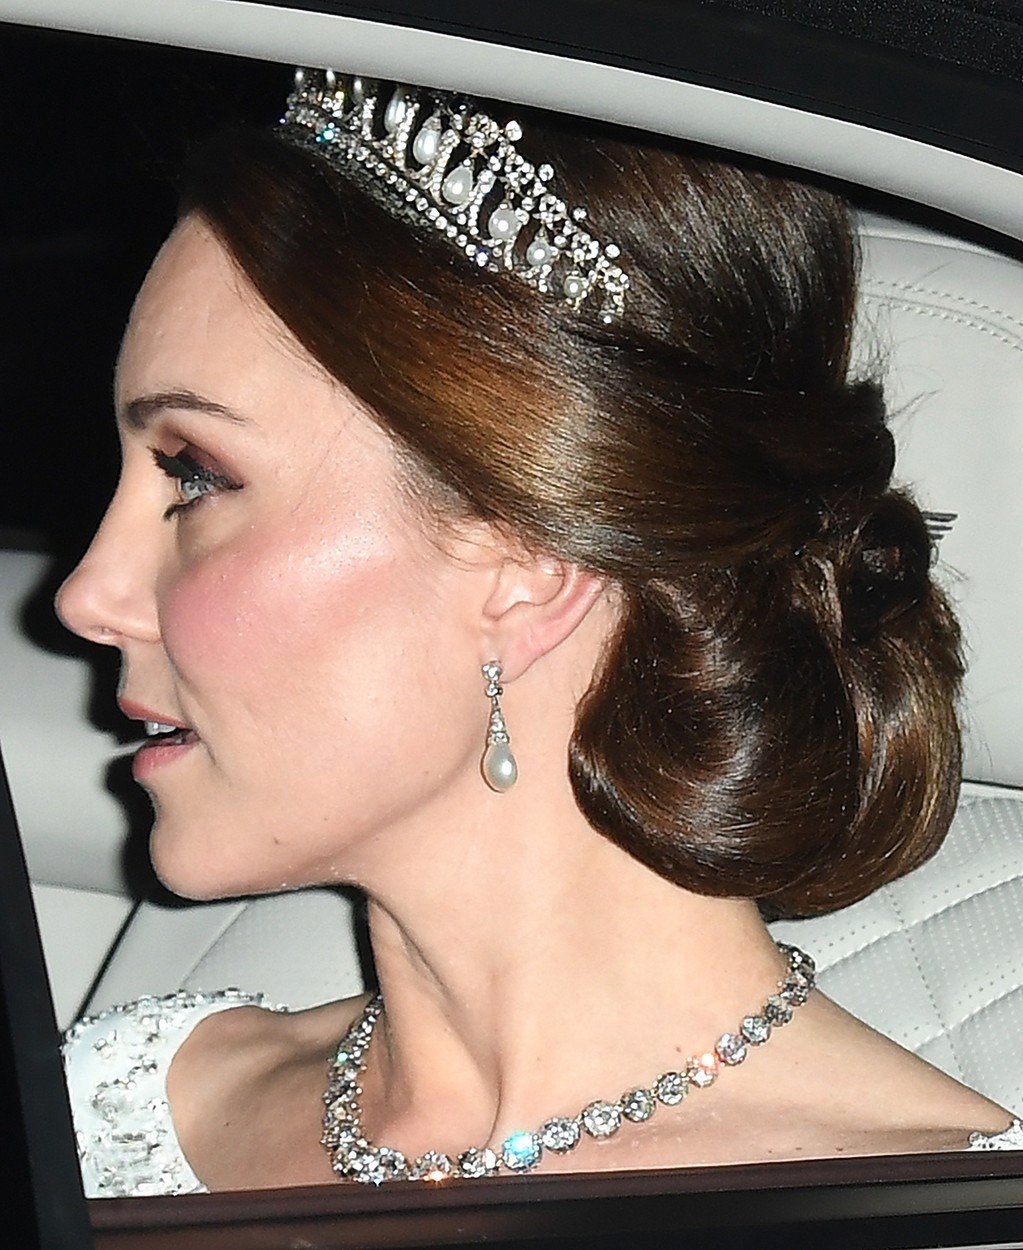 Kate ozdobila svůj účes korunkou, která patřila princezně Dianě